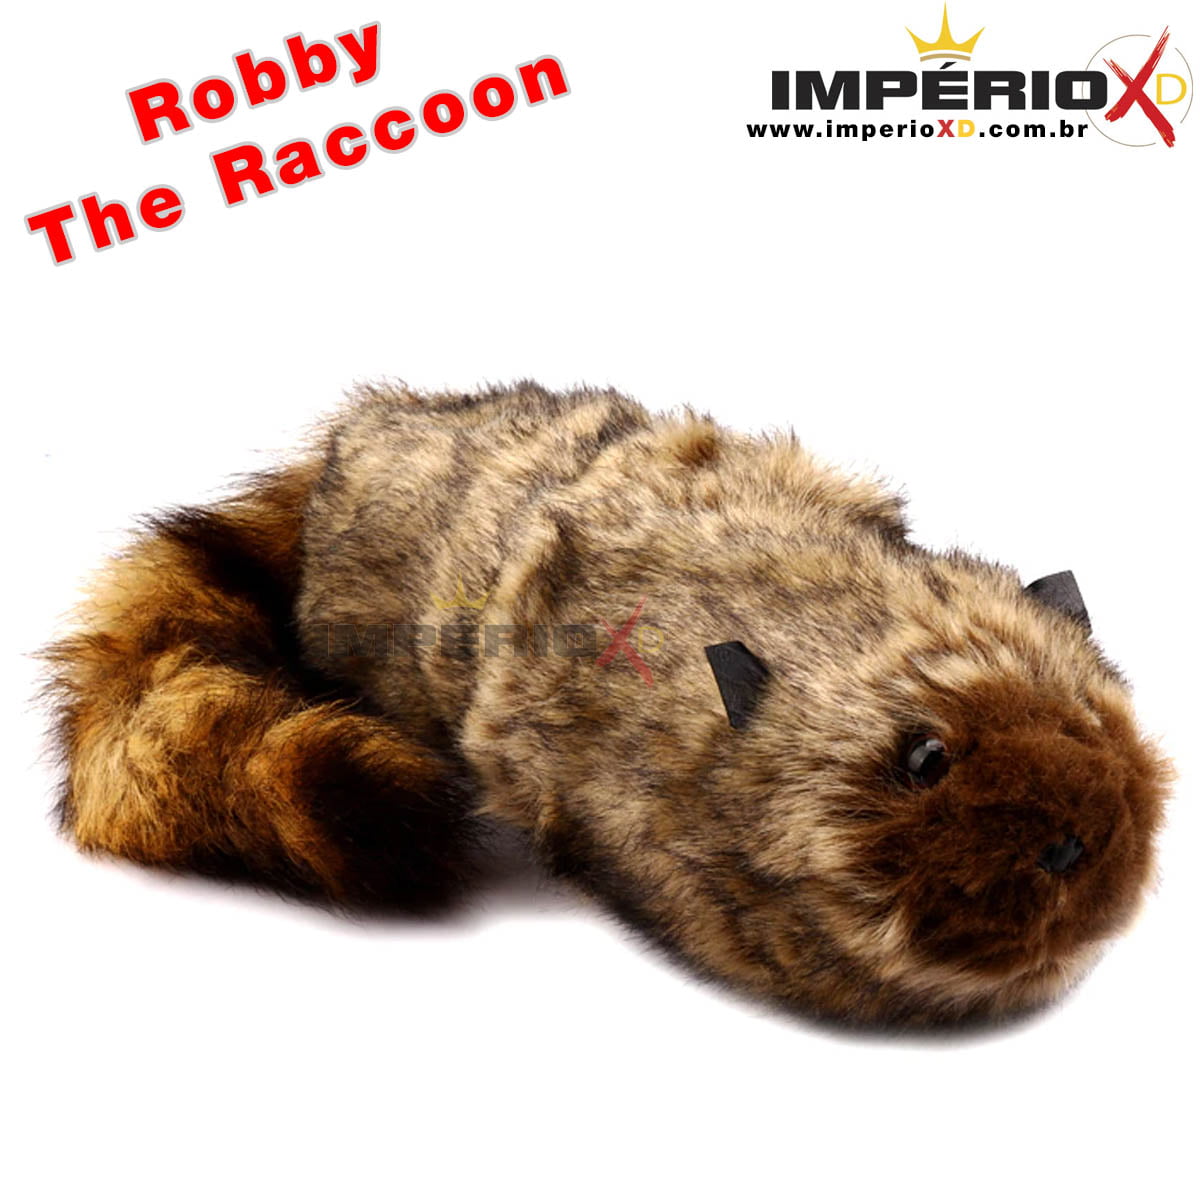 Robby The Raccoon